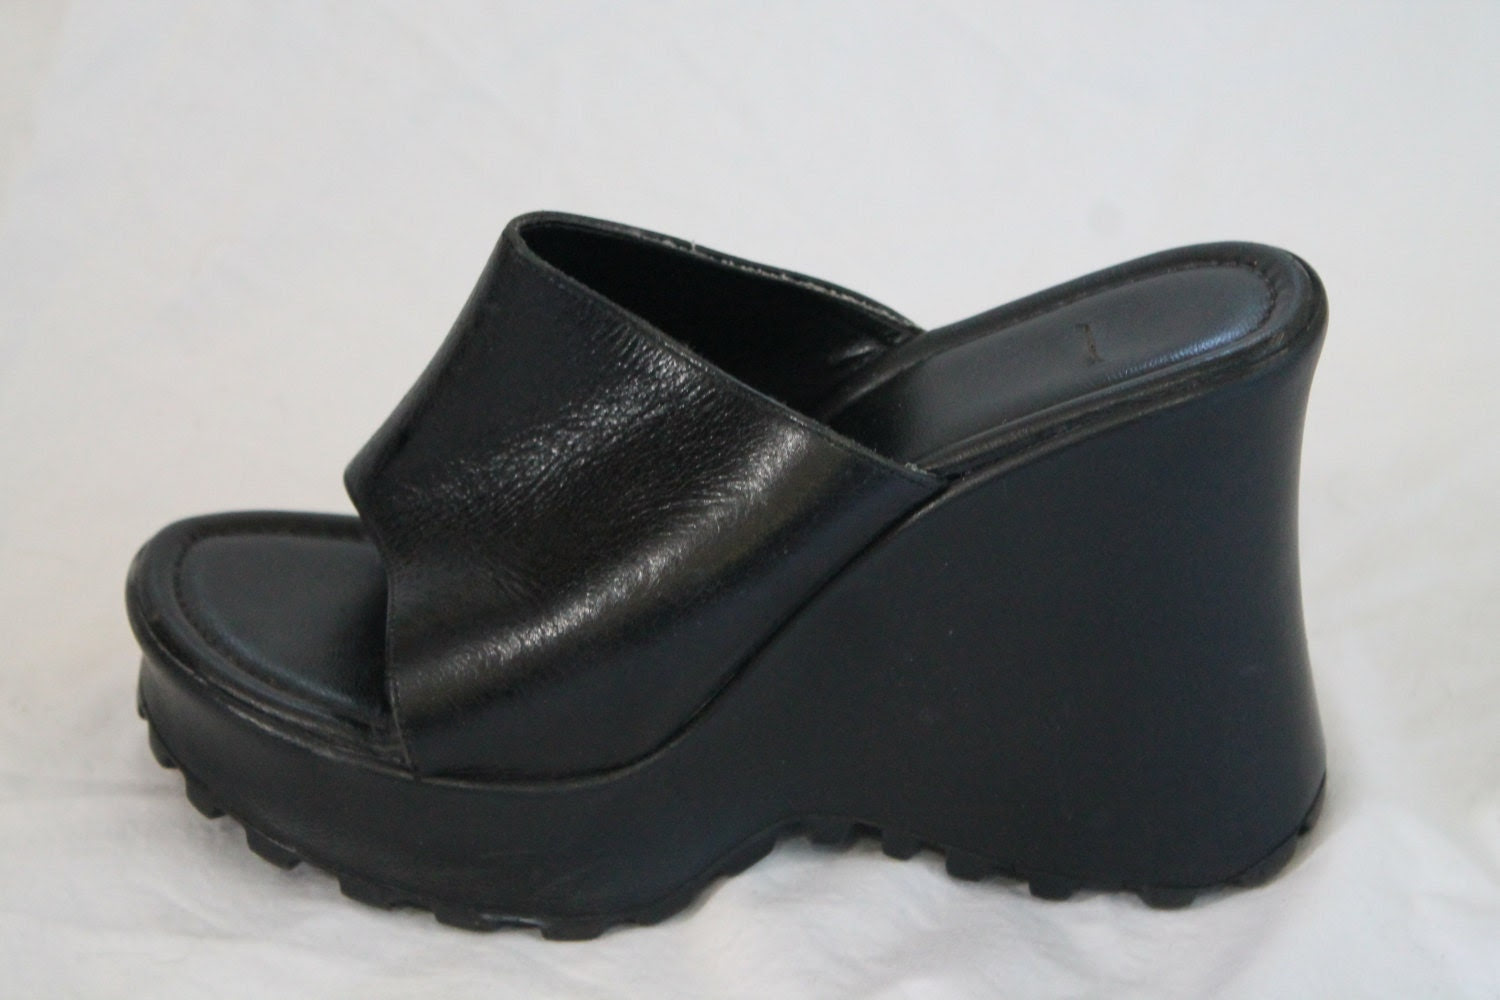 platform shoes Il_570xN.501951418_mgs4